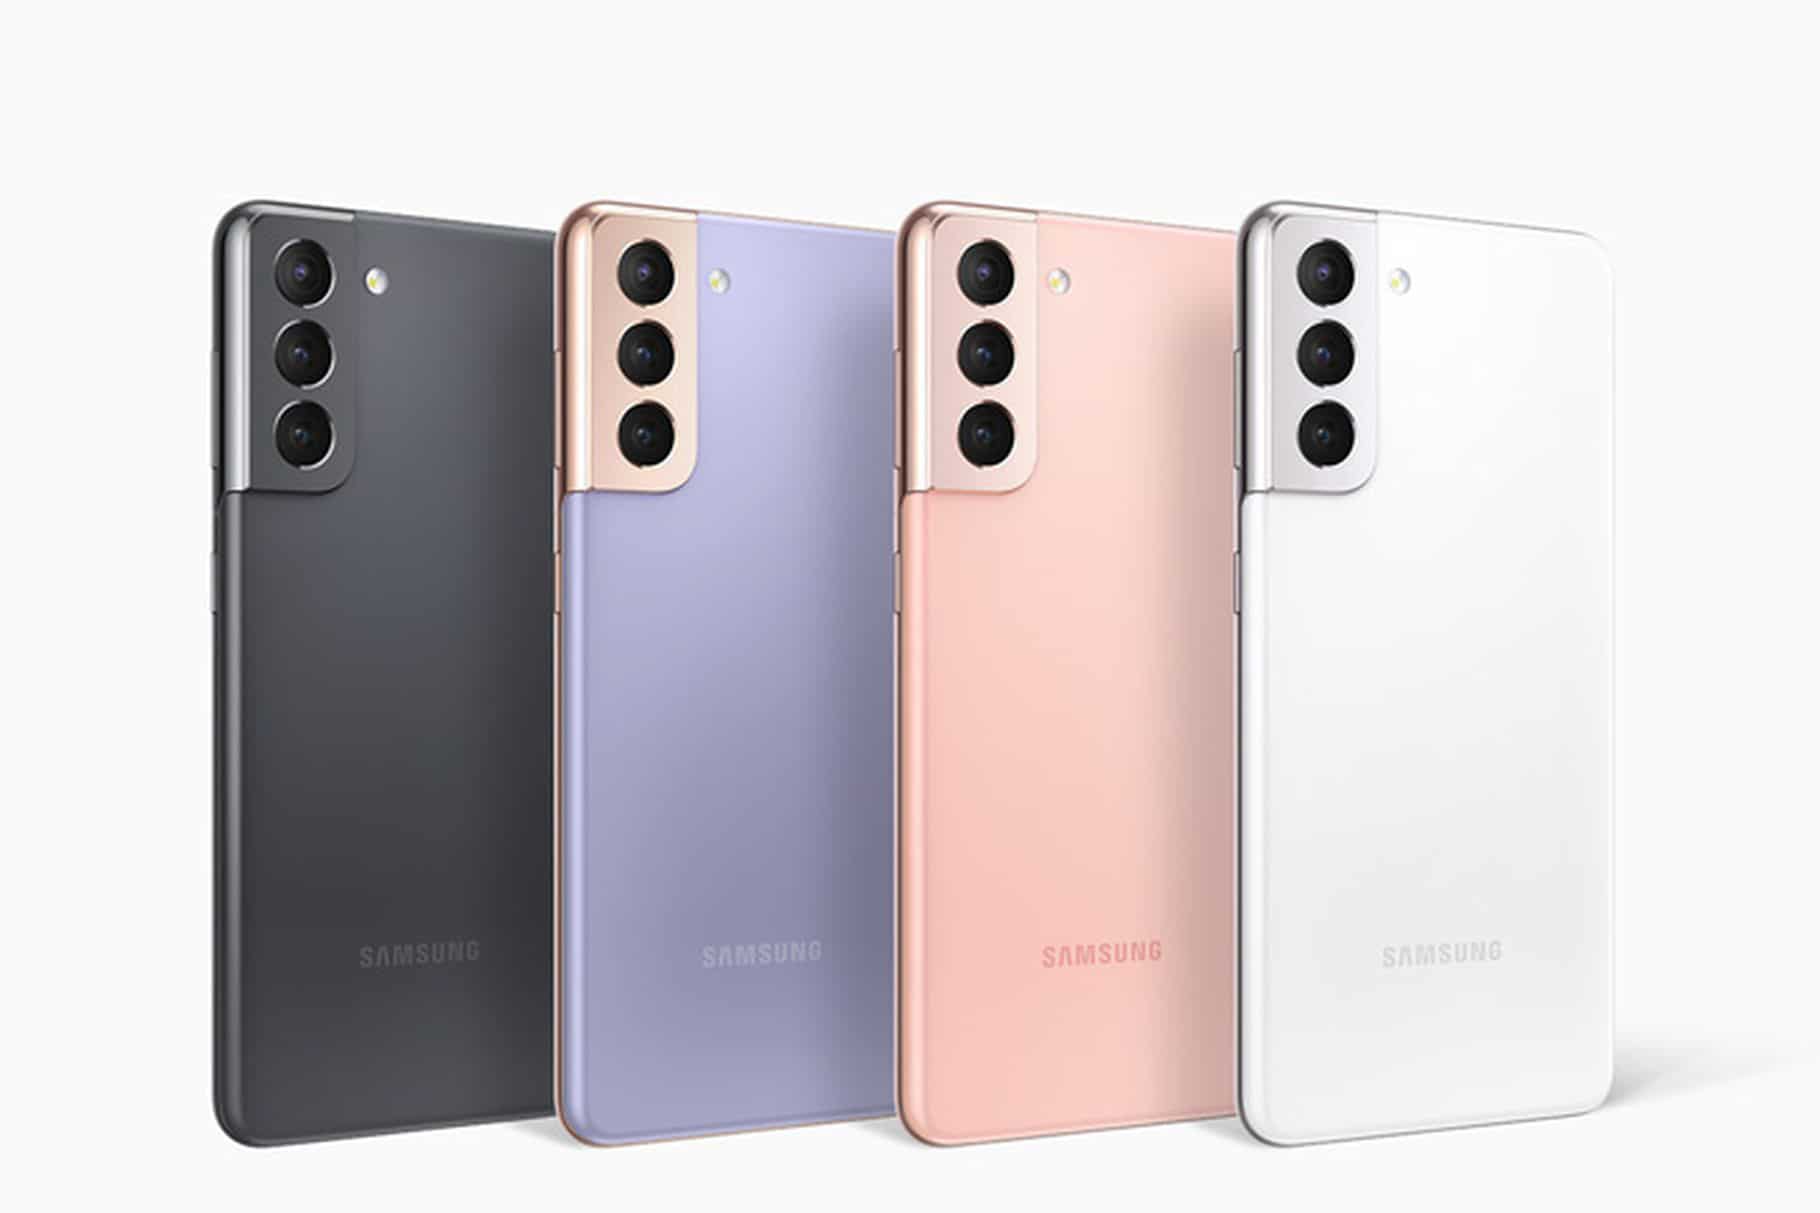   Din Samsung Galaxy S21/21+ öppnar inte appar?  Så här fixar du det
